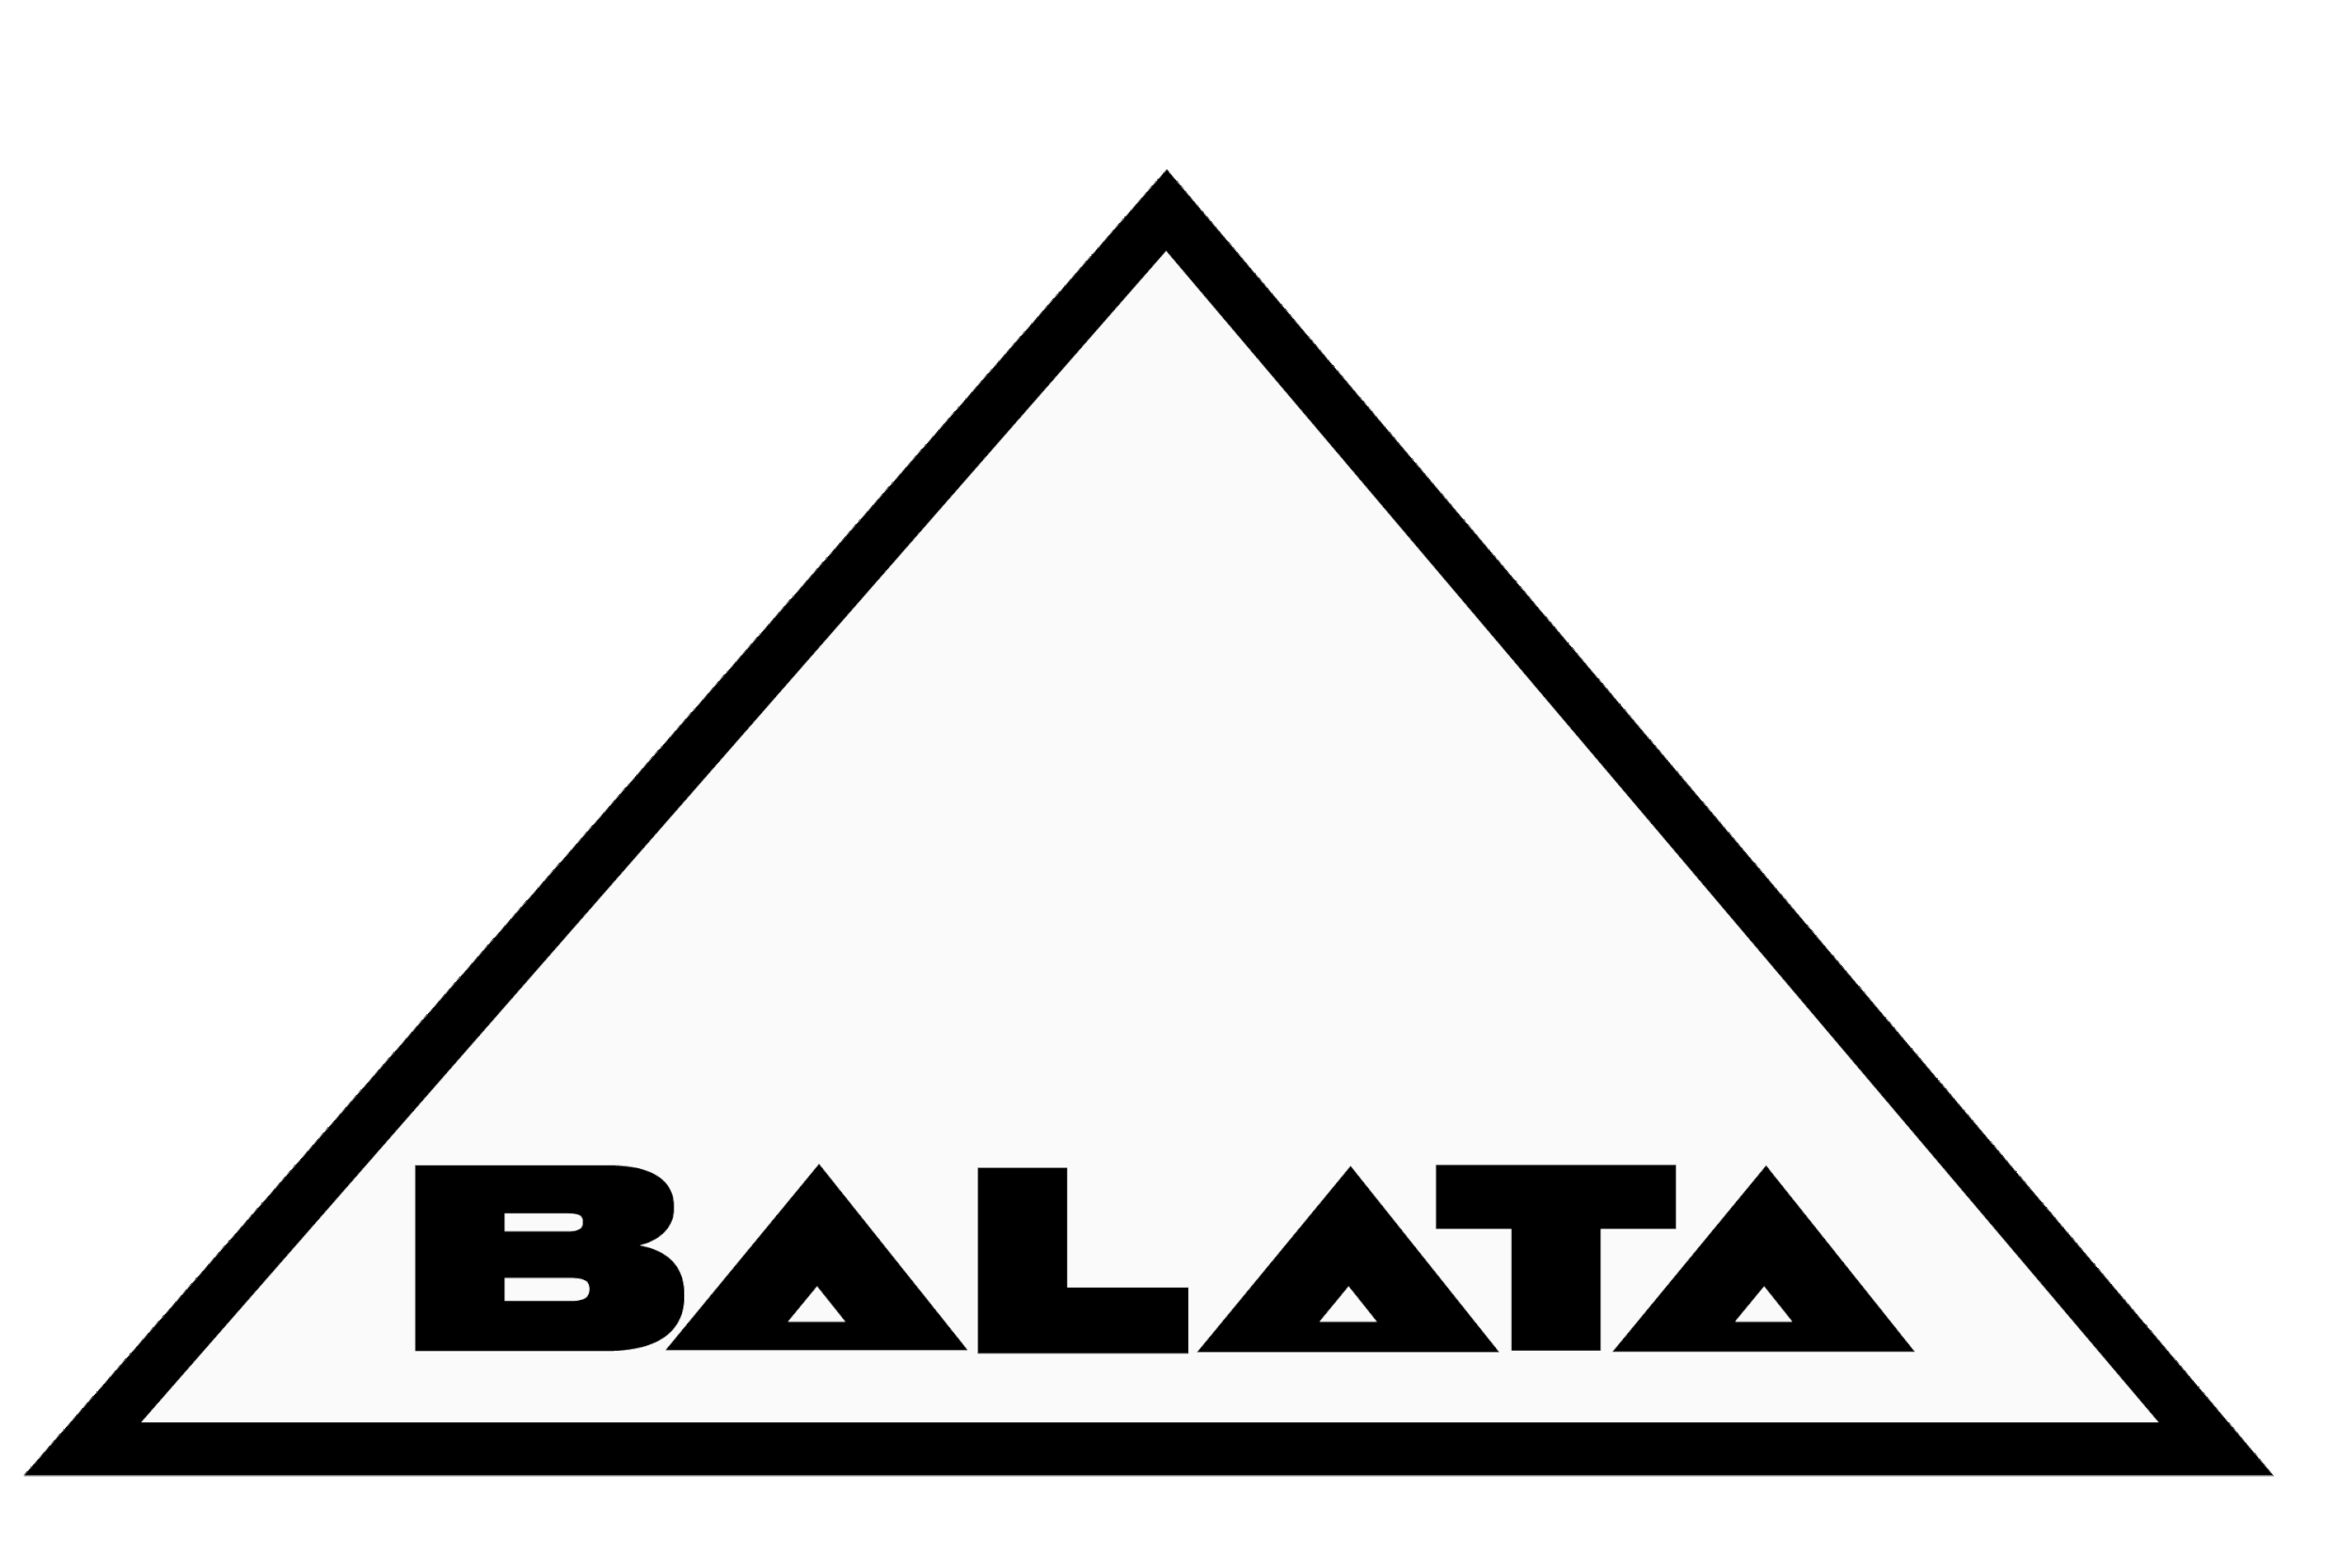 THE BALATA